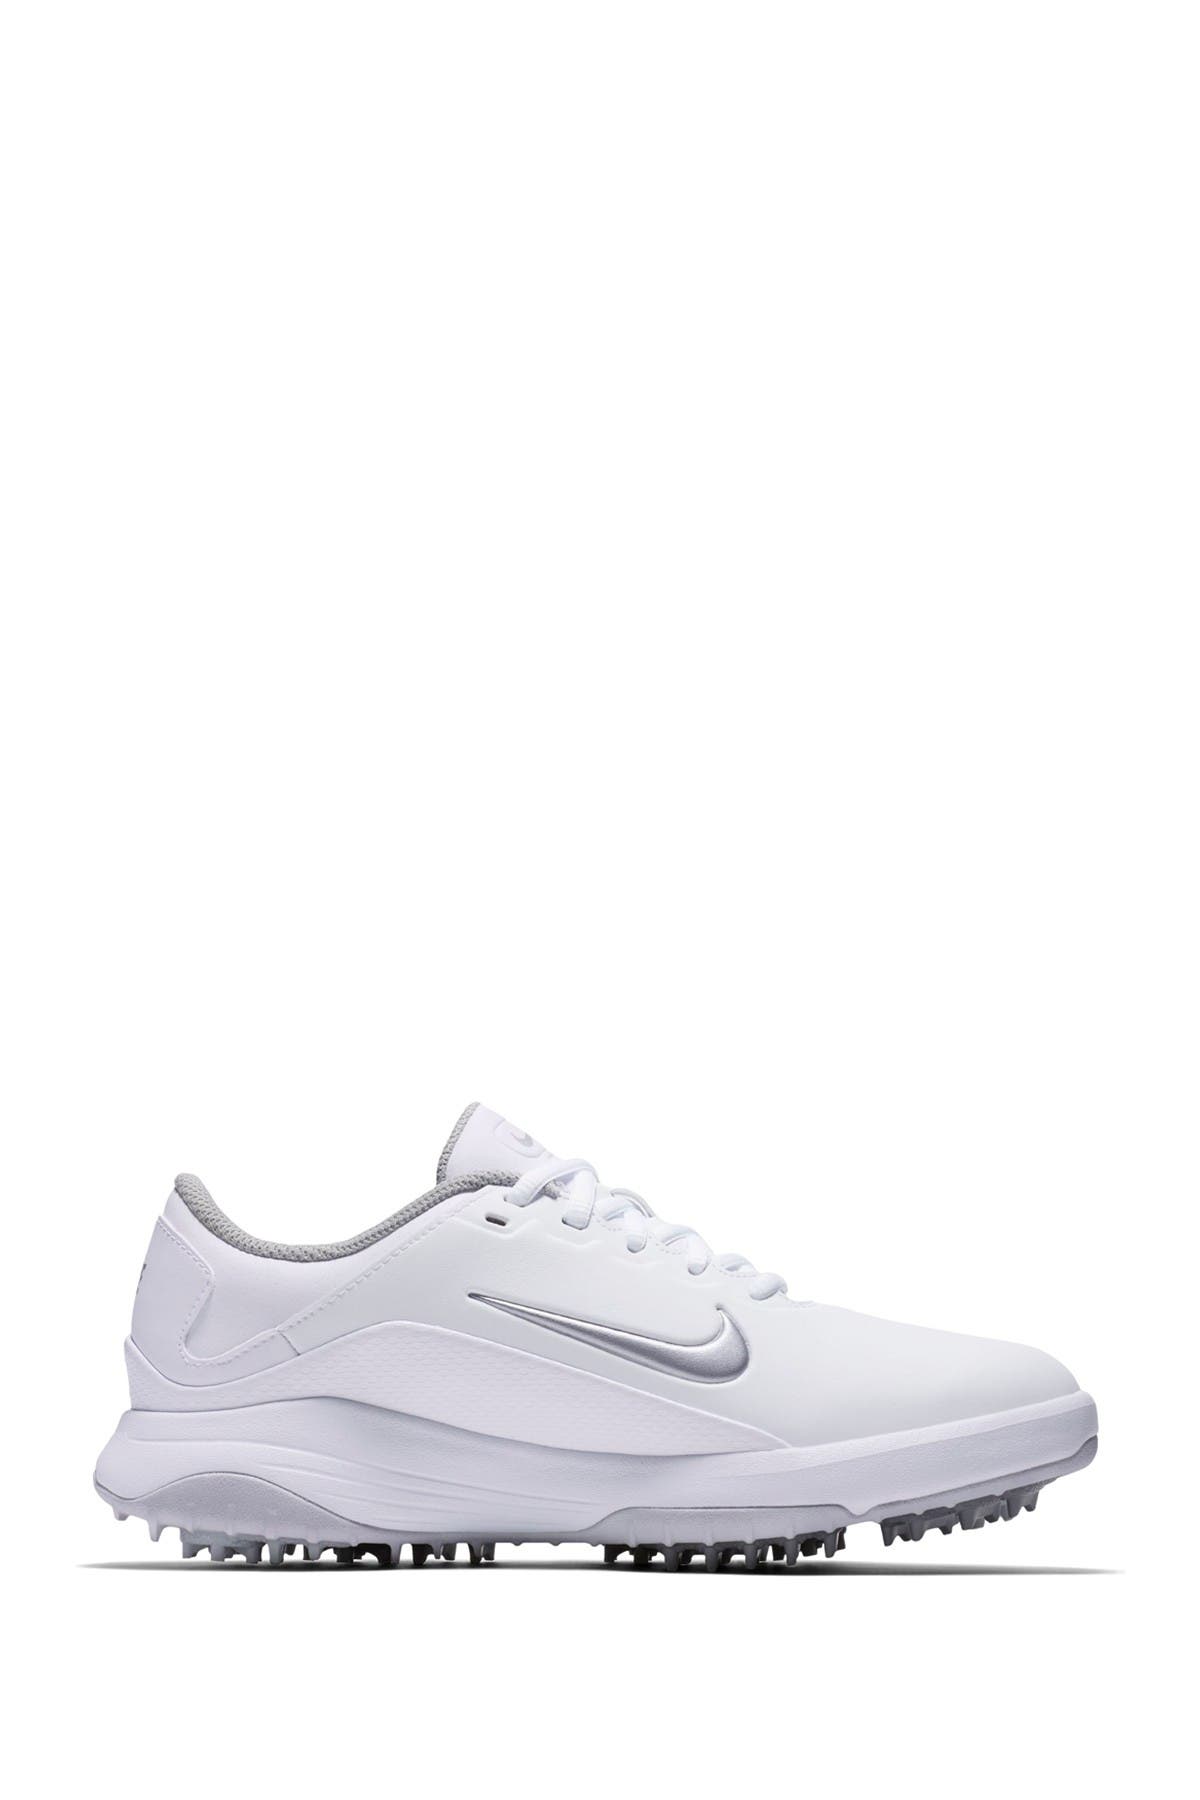 white on white tennis shoes